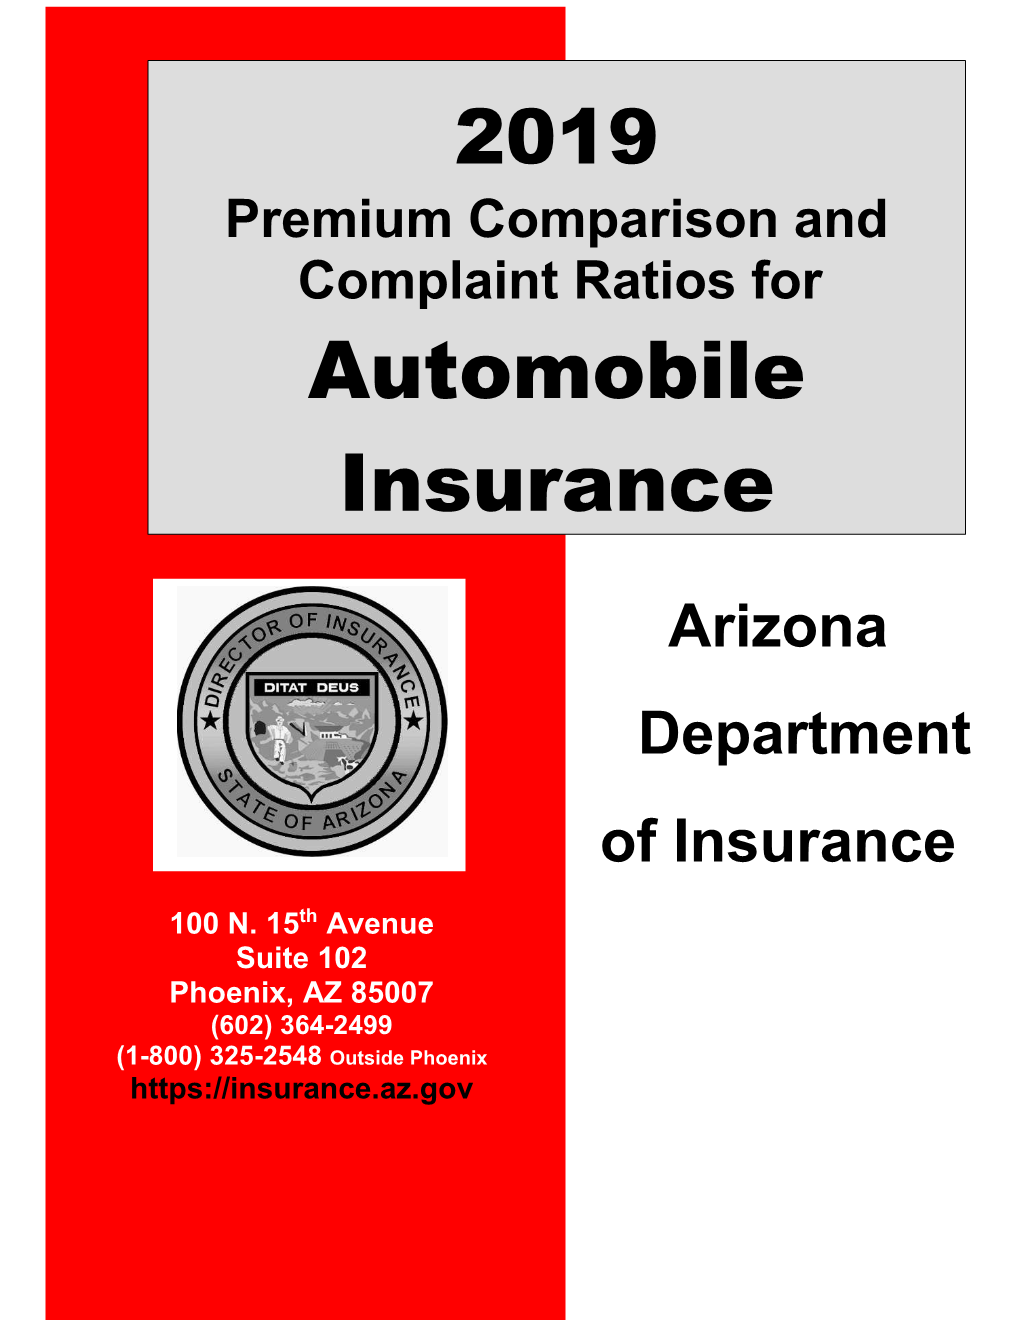 Arizona Department of Insurance